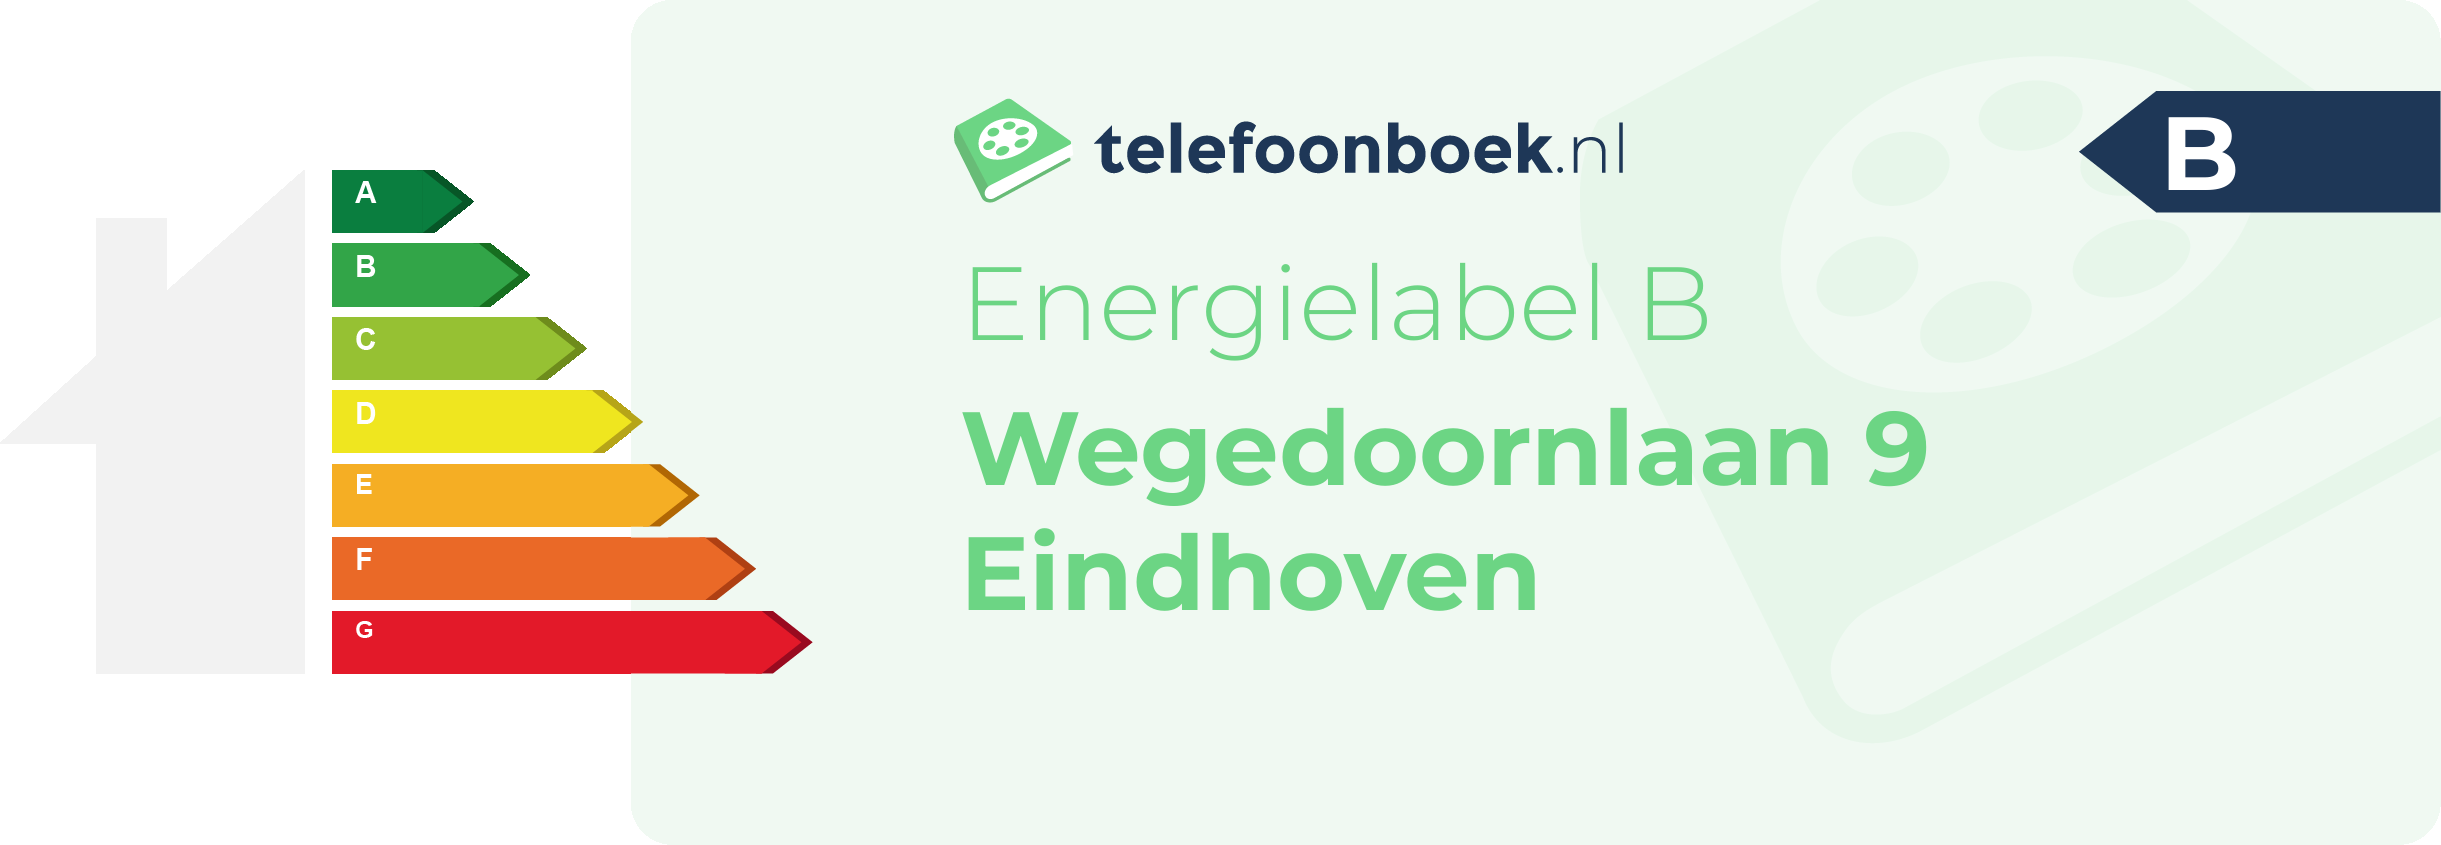 Energielabel Wegedoornlaan 9 Eindhoven